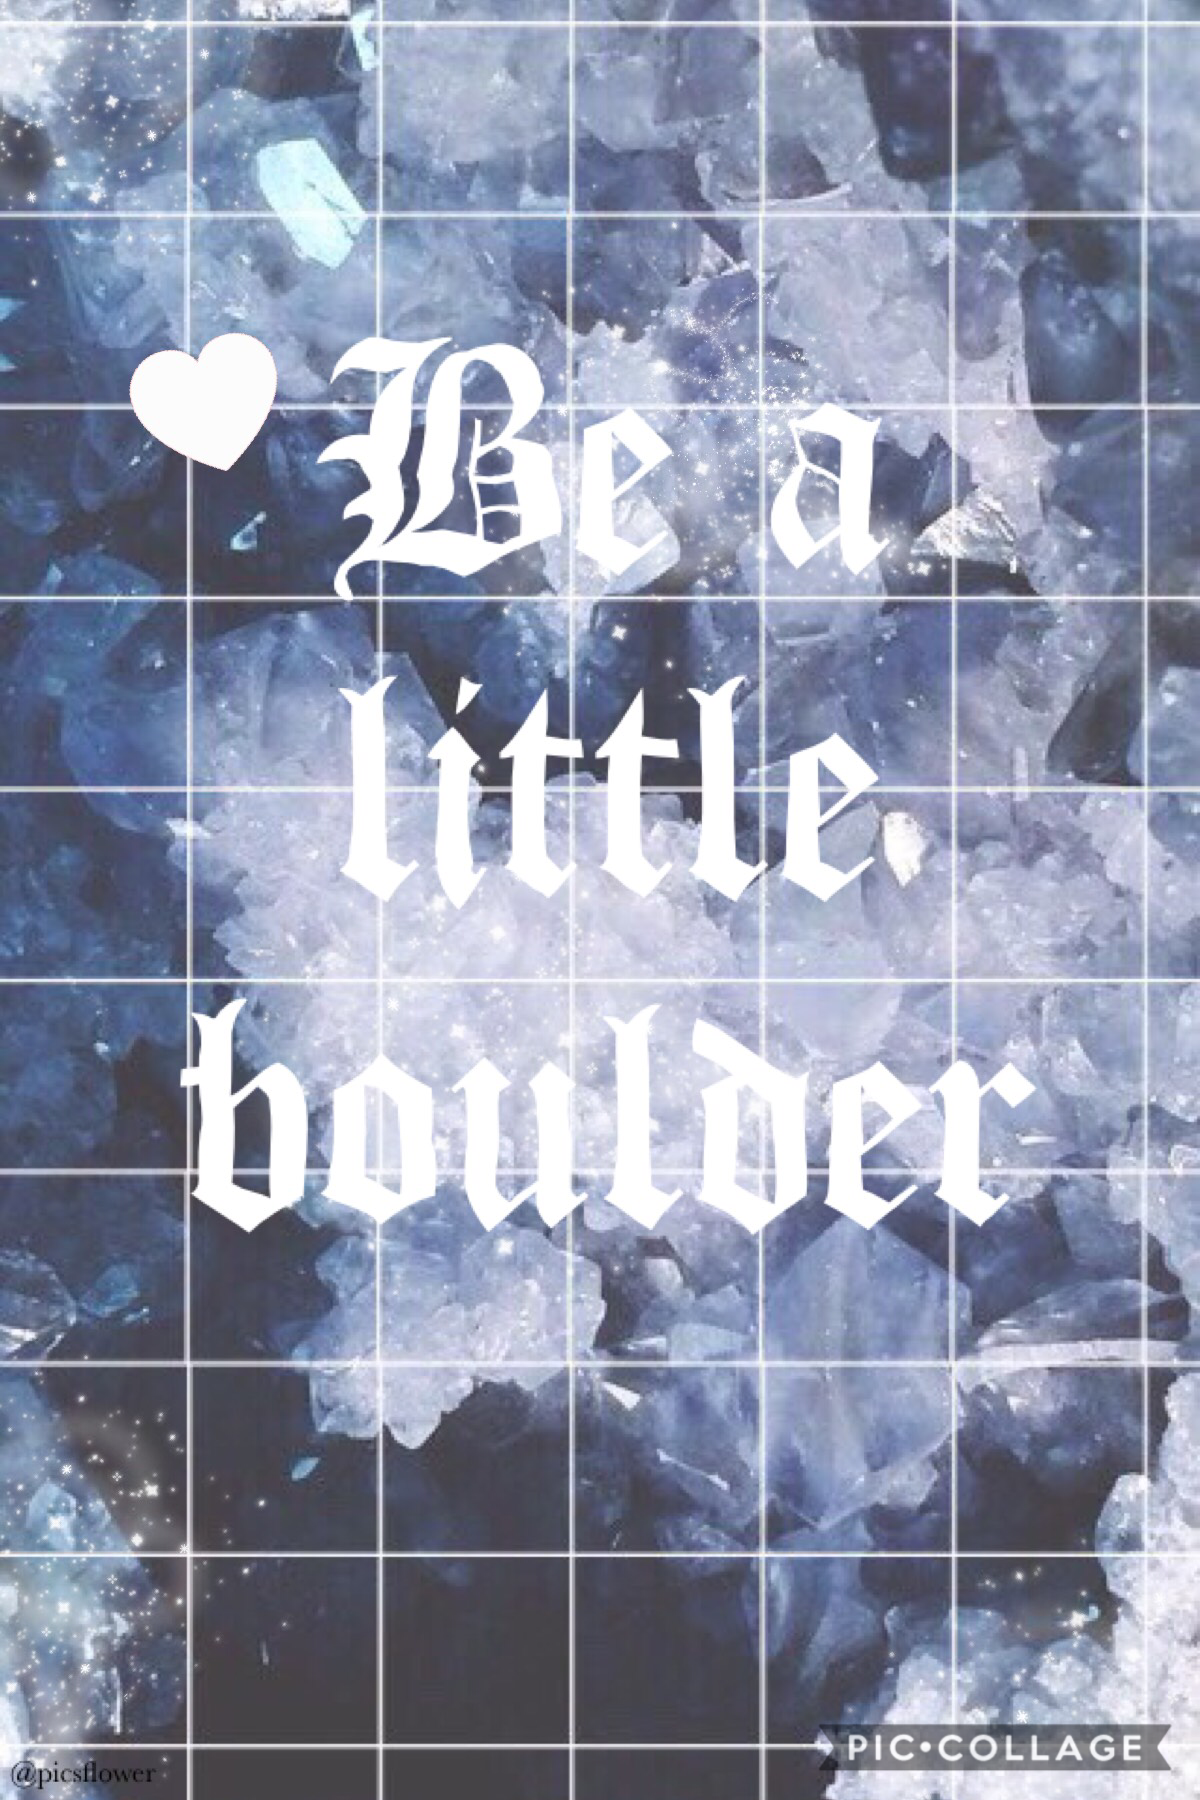 Be A littLe BouLdeR!